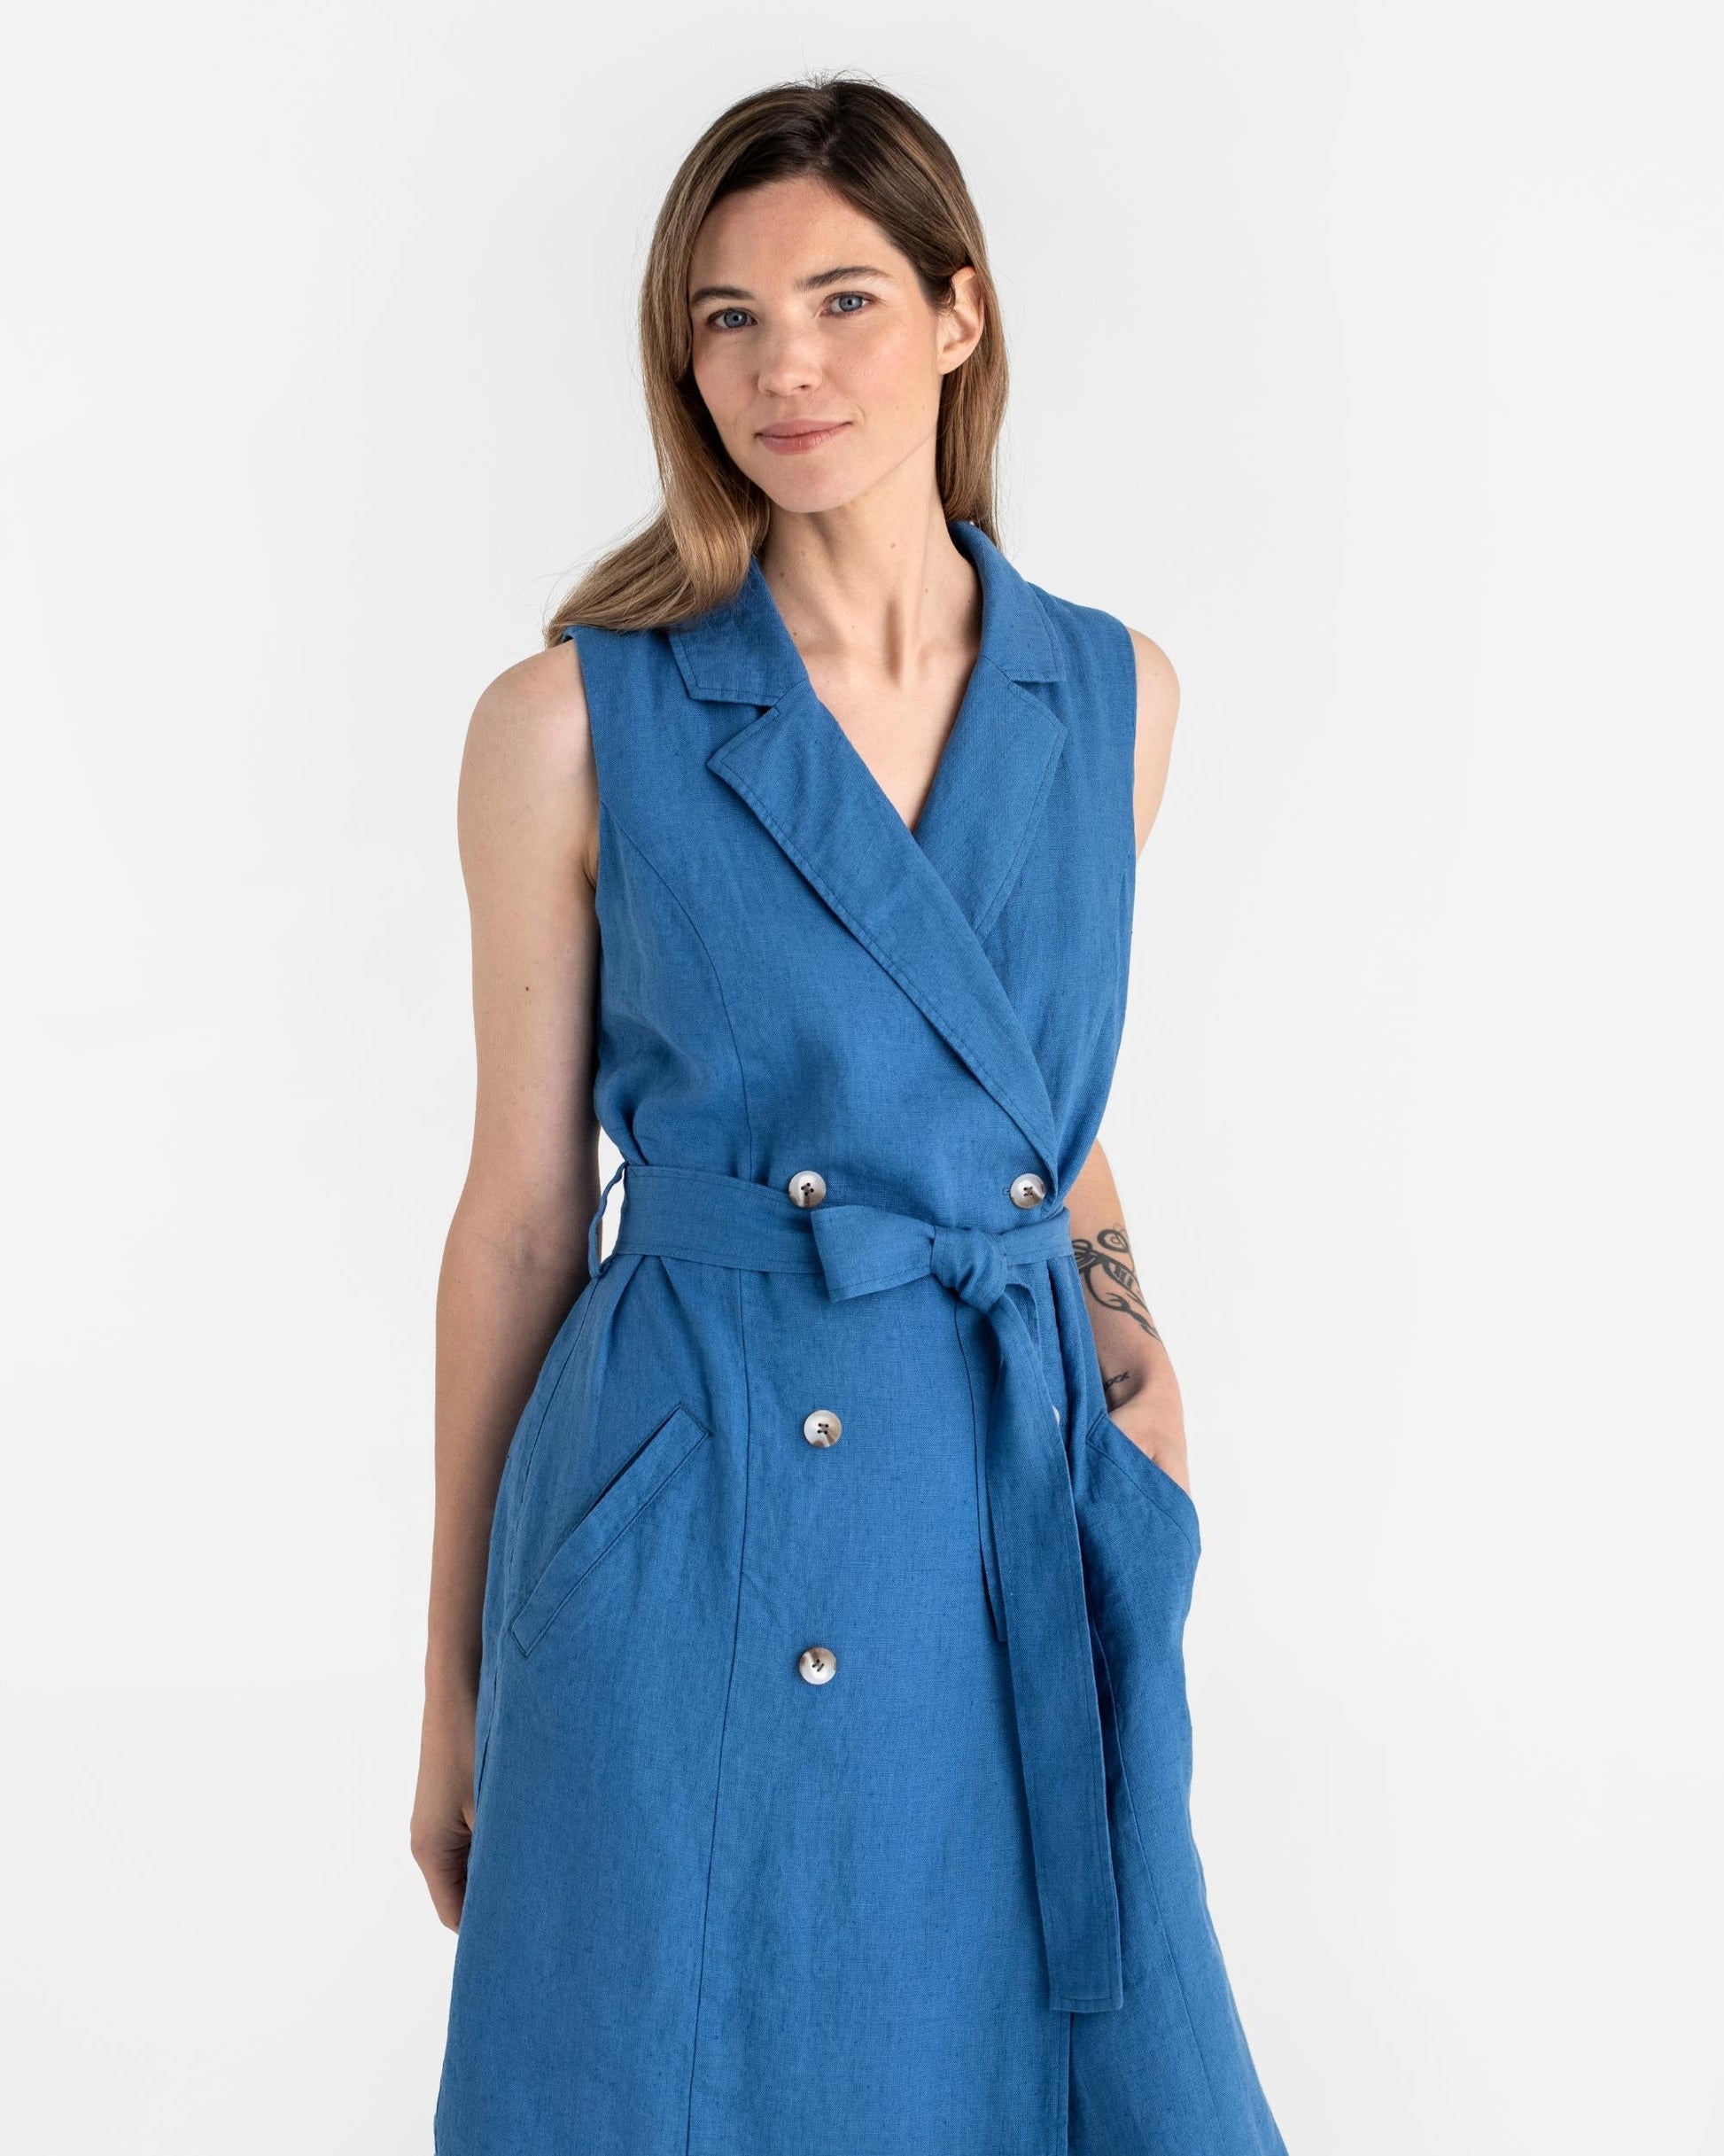 Trench linen dress LISBON in Cobalt blue - MagicLinen